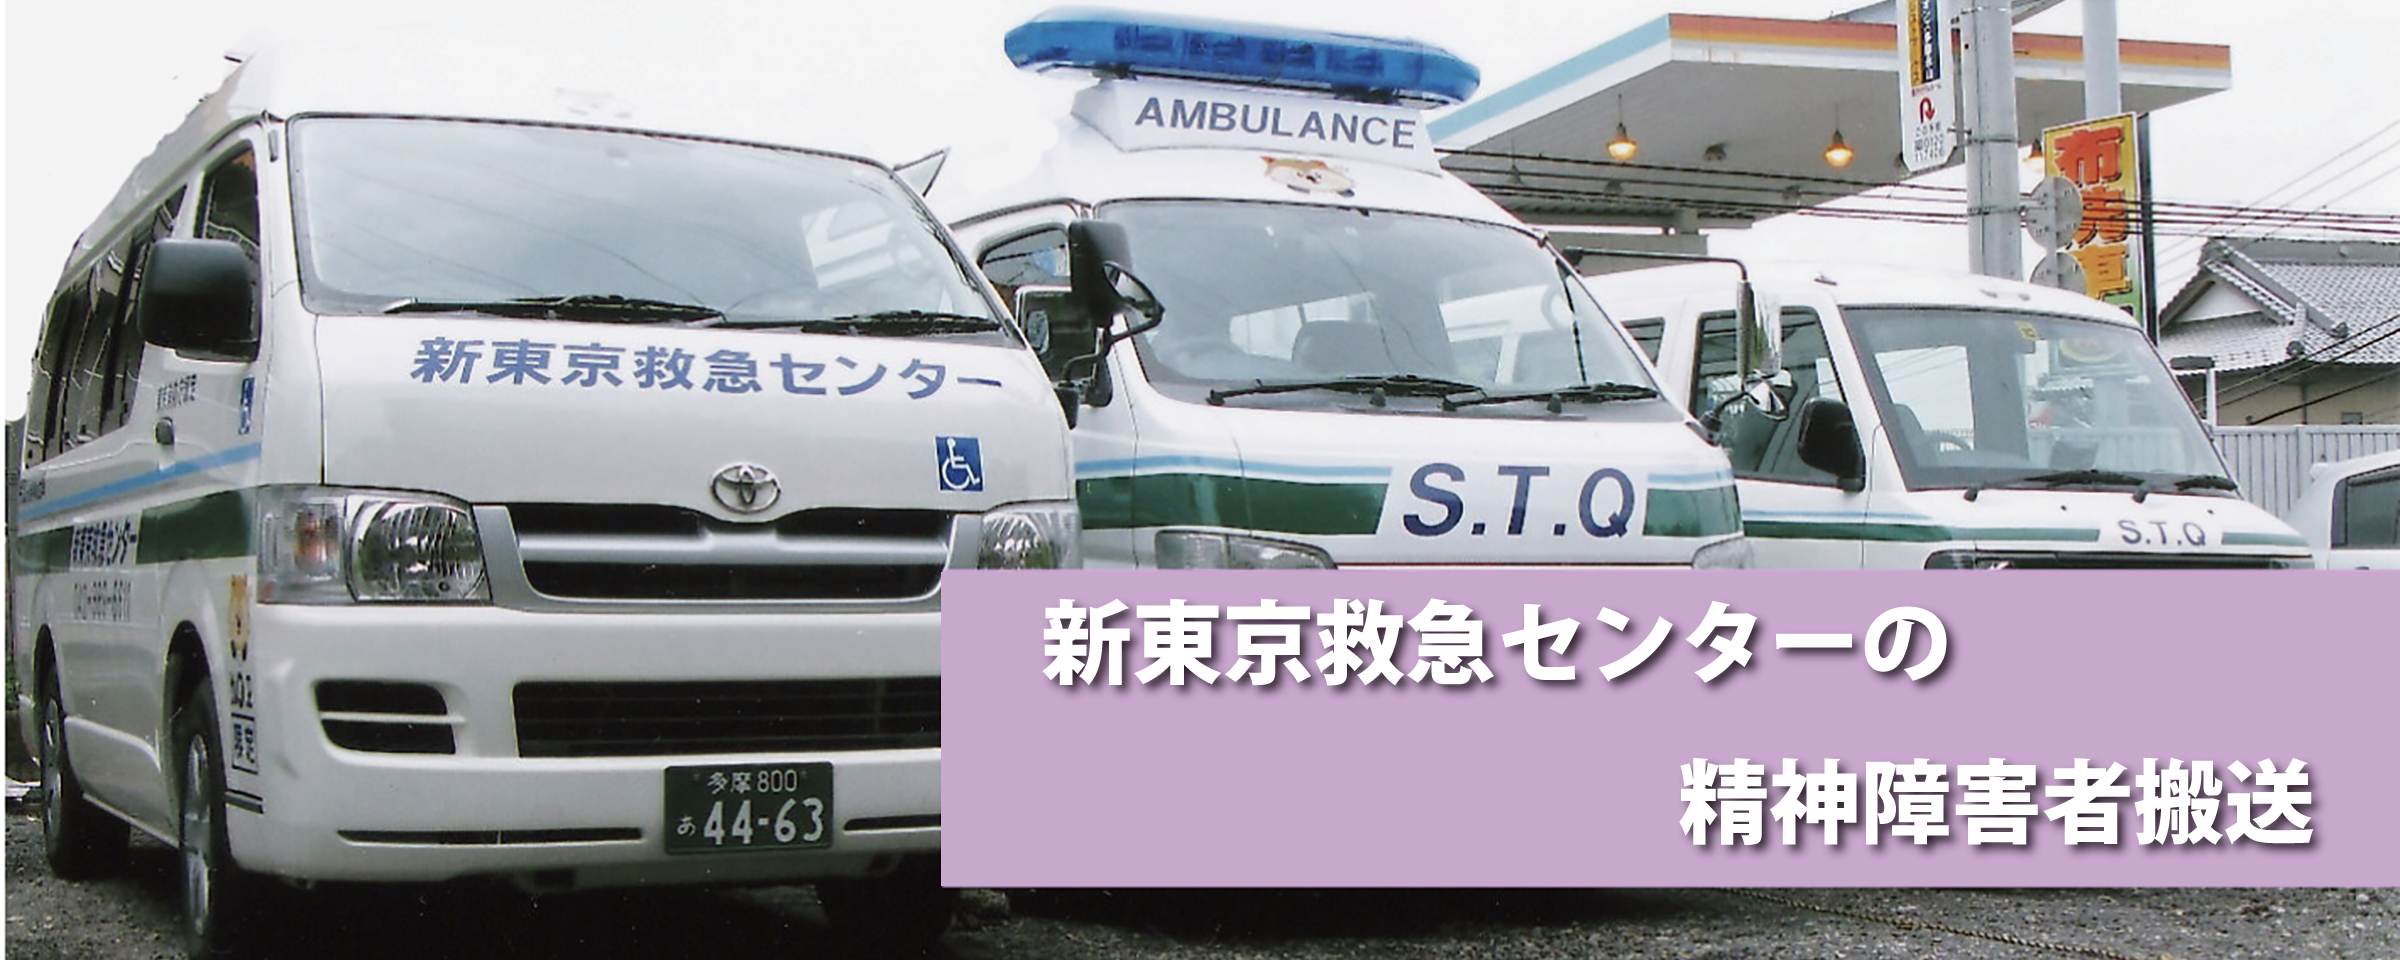 精神疾患搬送サービス新東京救急センターTOP画像2